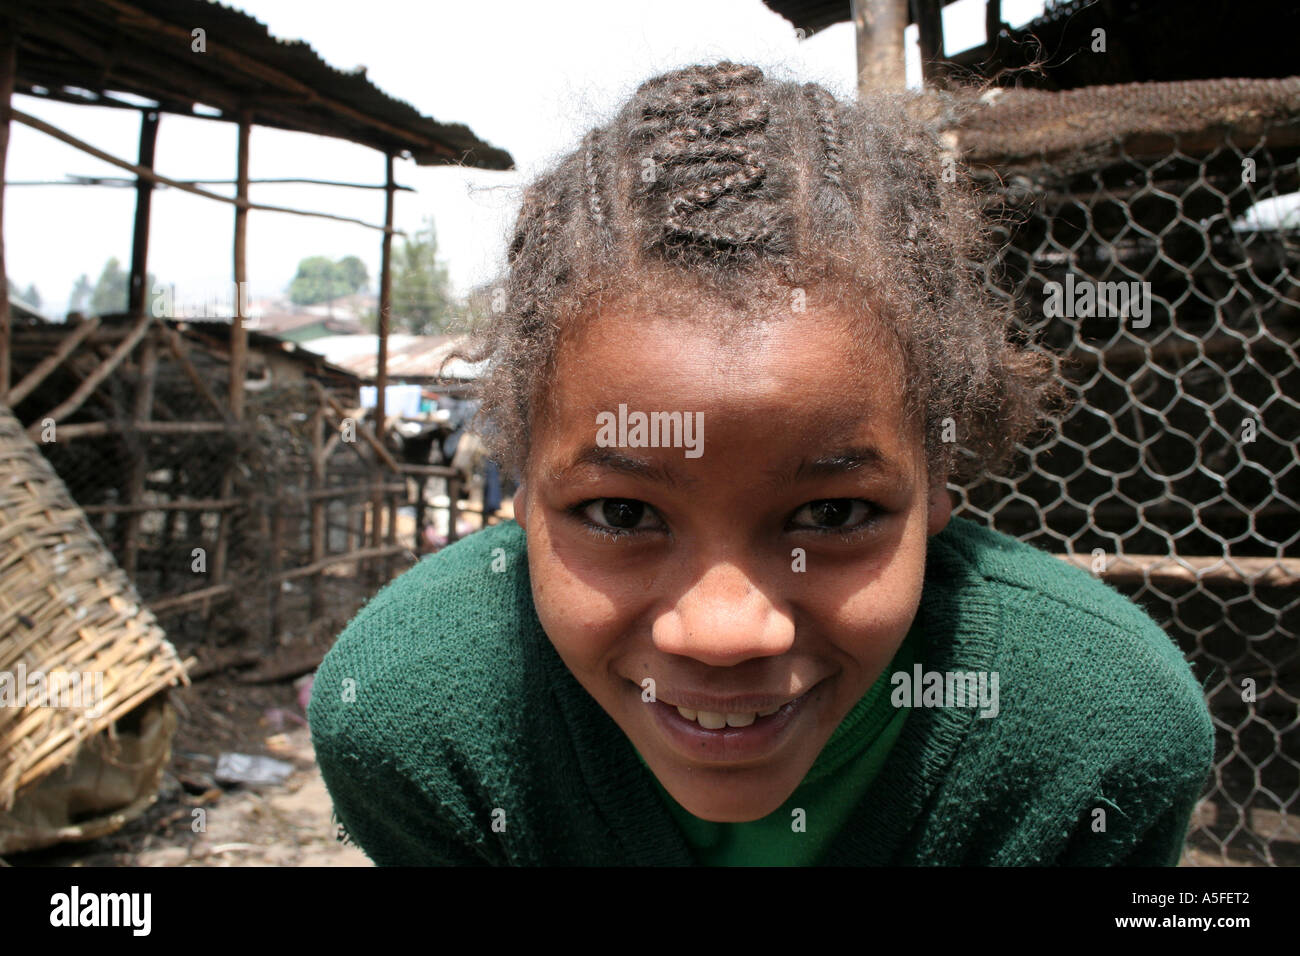 Etiopia, Addis Abeba, Merkato, Addis Ketema, città nuova, giovane ragazza con i capelli intrecciati nel mercato principale Foto Stock